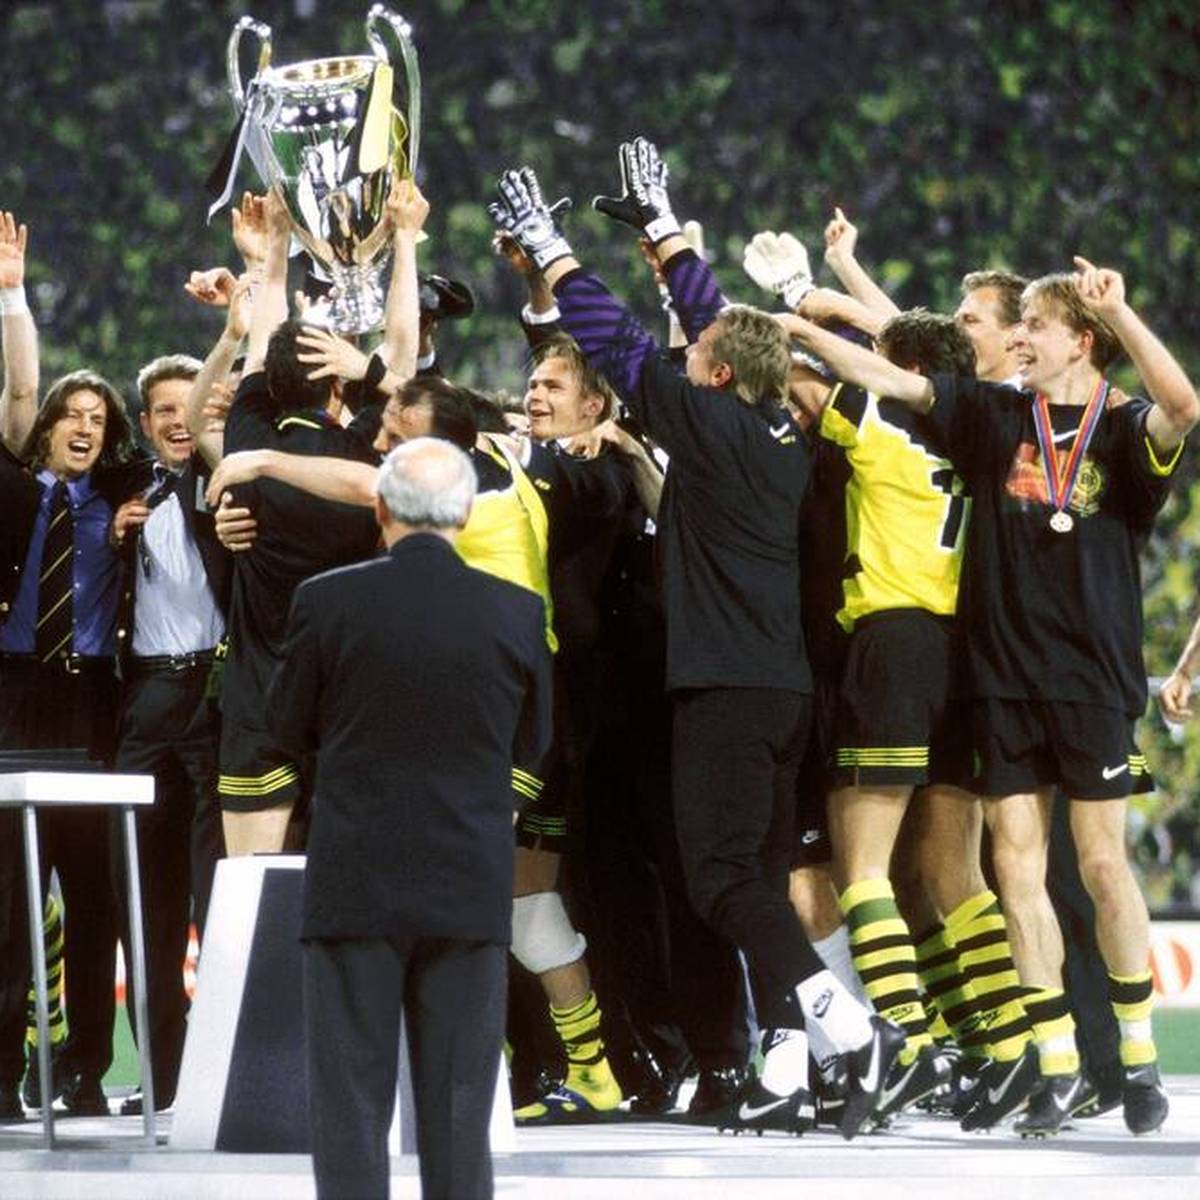 Am 28. Mai 1997 gewinnt Borussia Dortmund im Münchner Olympiastadion erstmals die Champions League. Zum 25. Jubiläum erinnern sich acht Helden von damals an den außergewöhnlichen Erfolg.